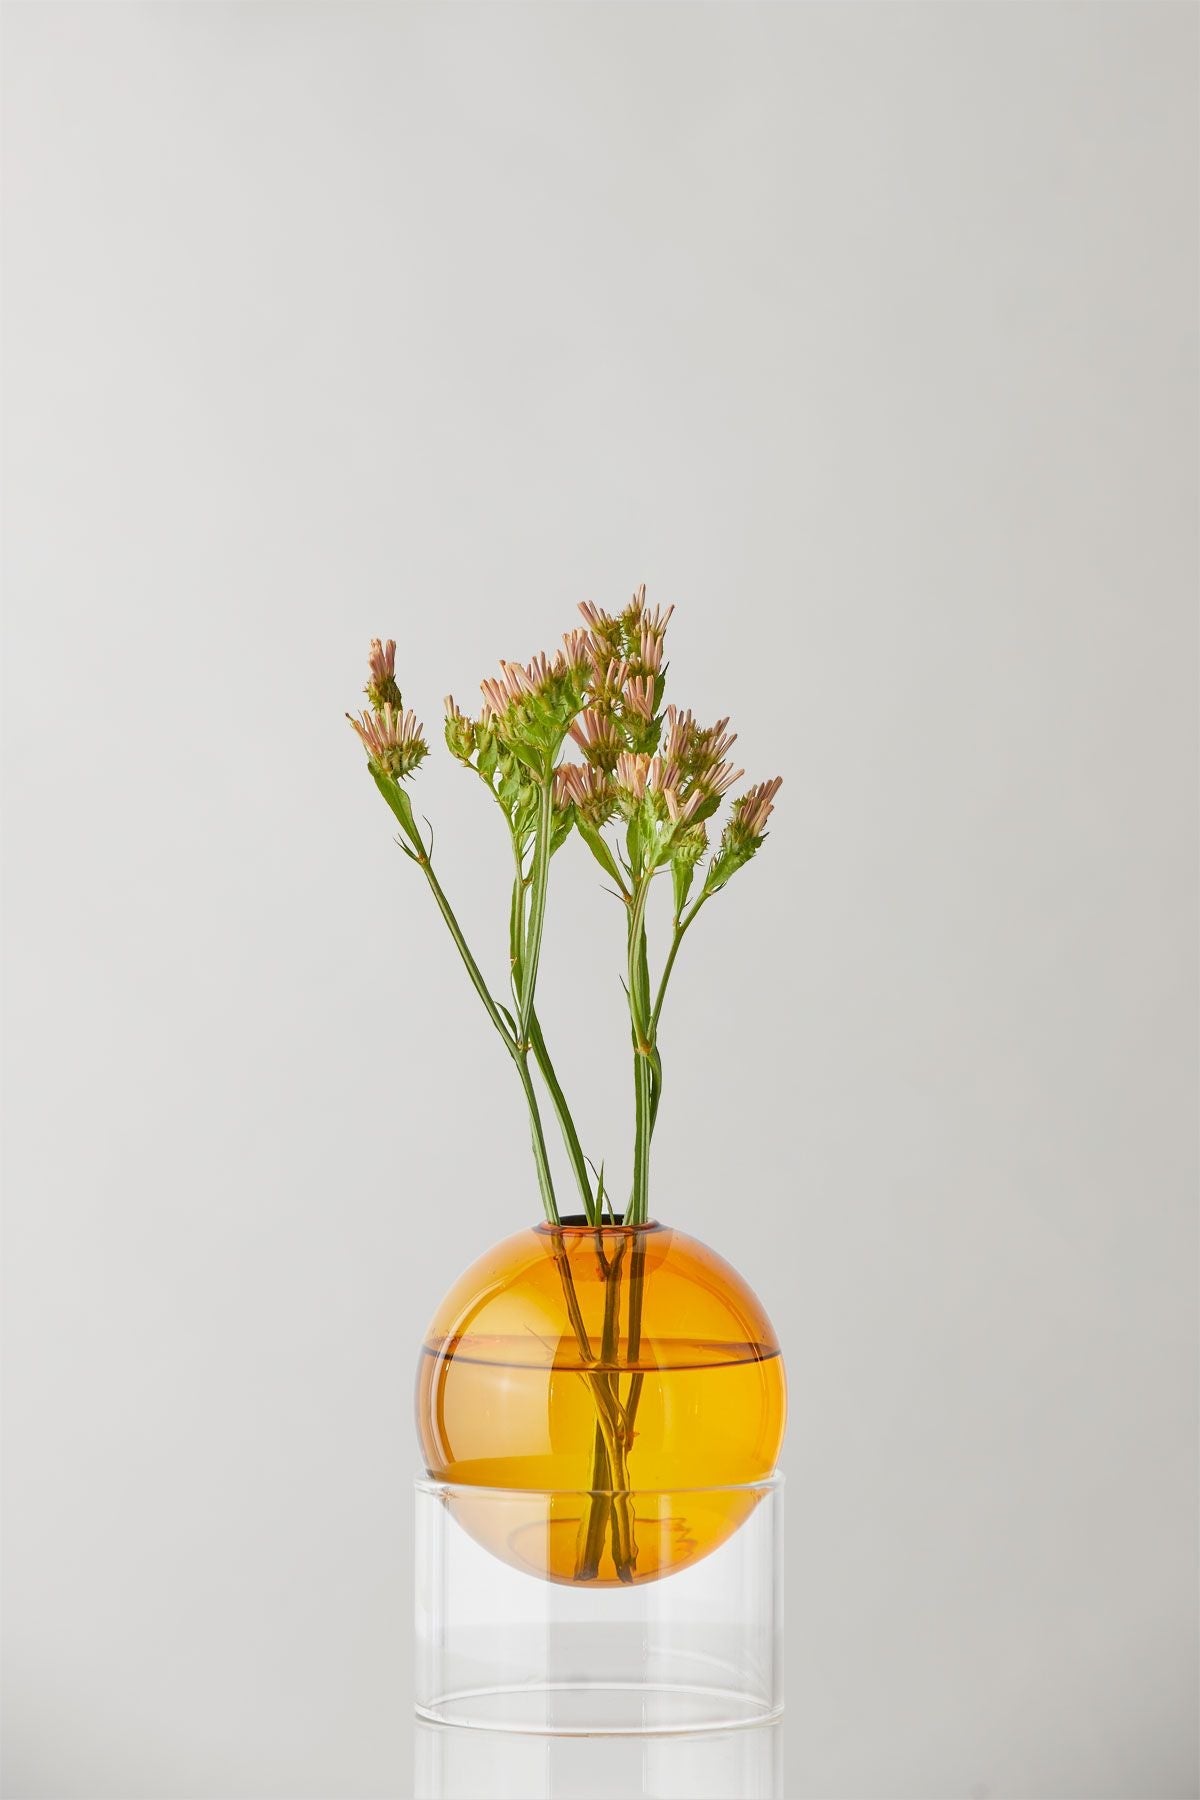 Studio over staande bloemen bellenvaas 10 cm, barnsteen